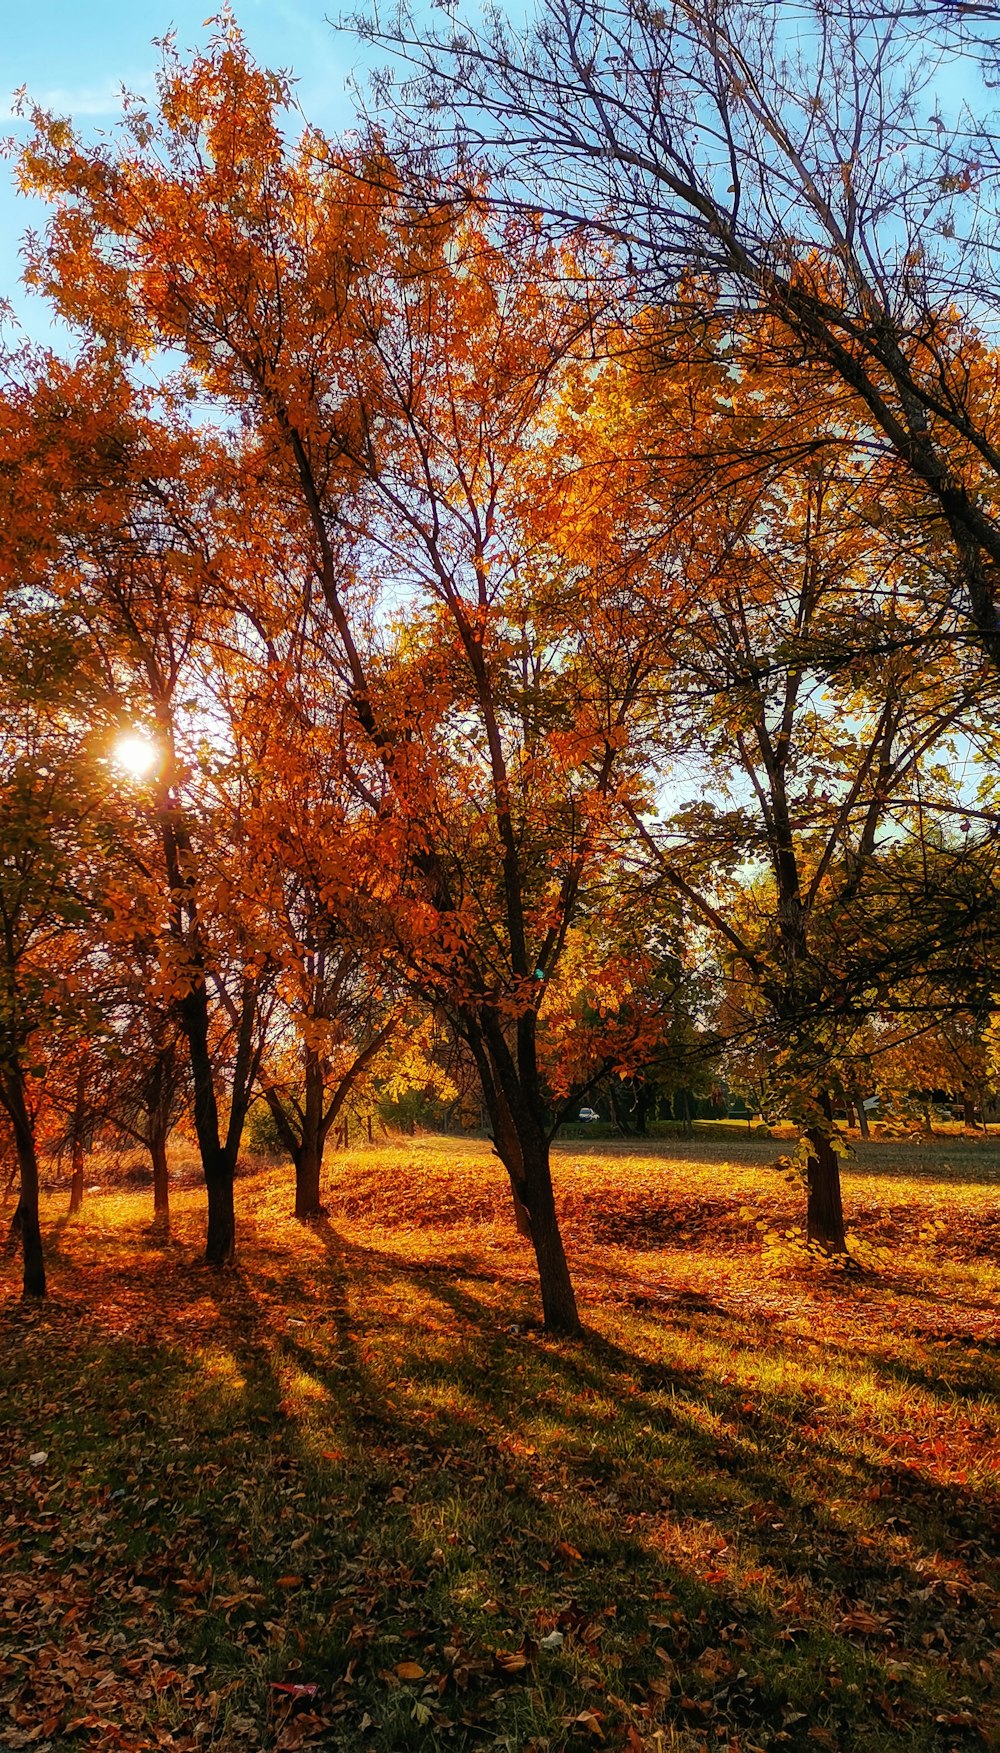 El sol brilla a través de los árboles del parque